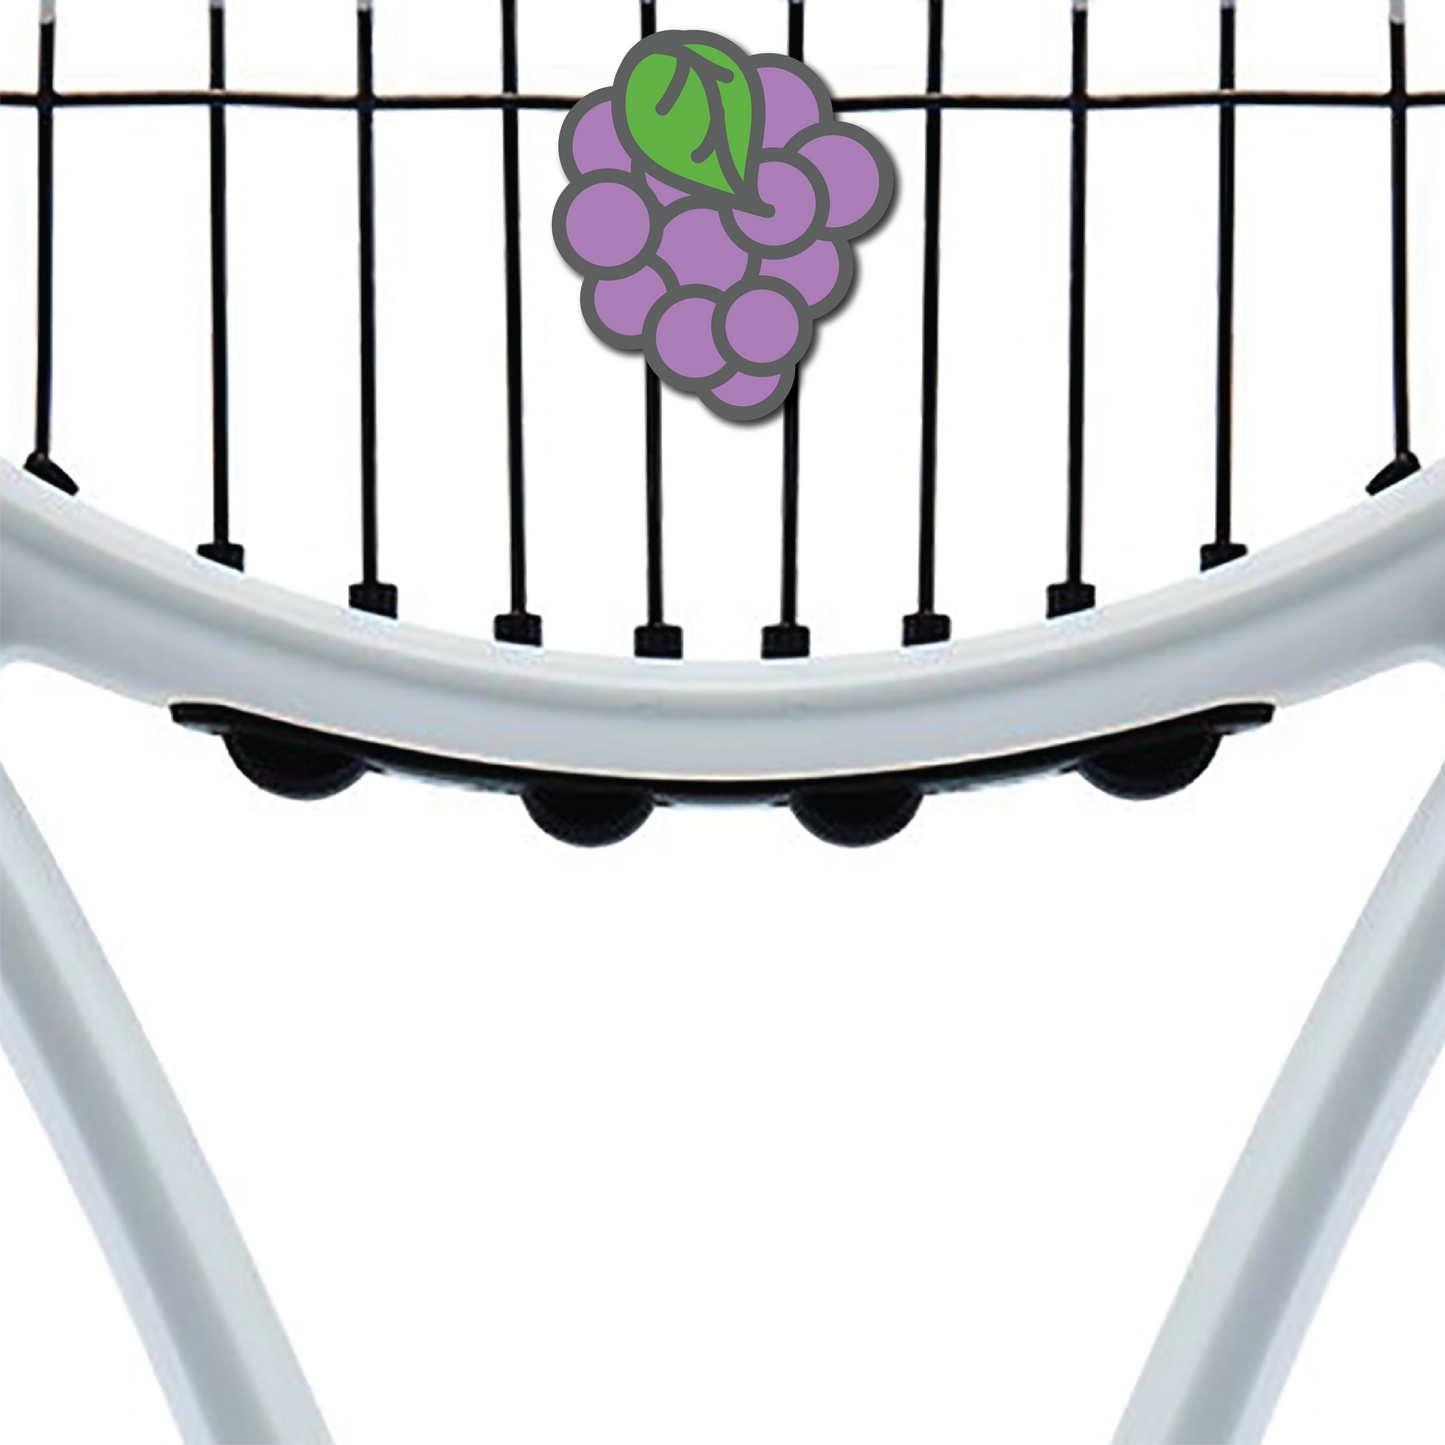 Grapes Grape Tennis Racquet Dampener Racquet Inc Tennis Gifts